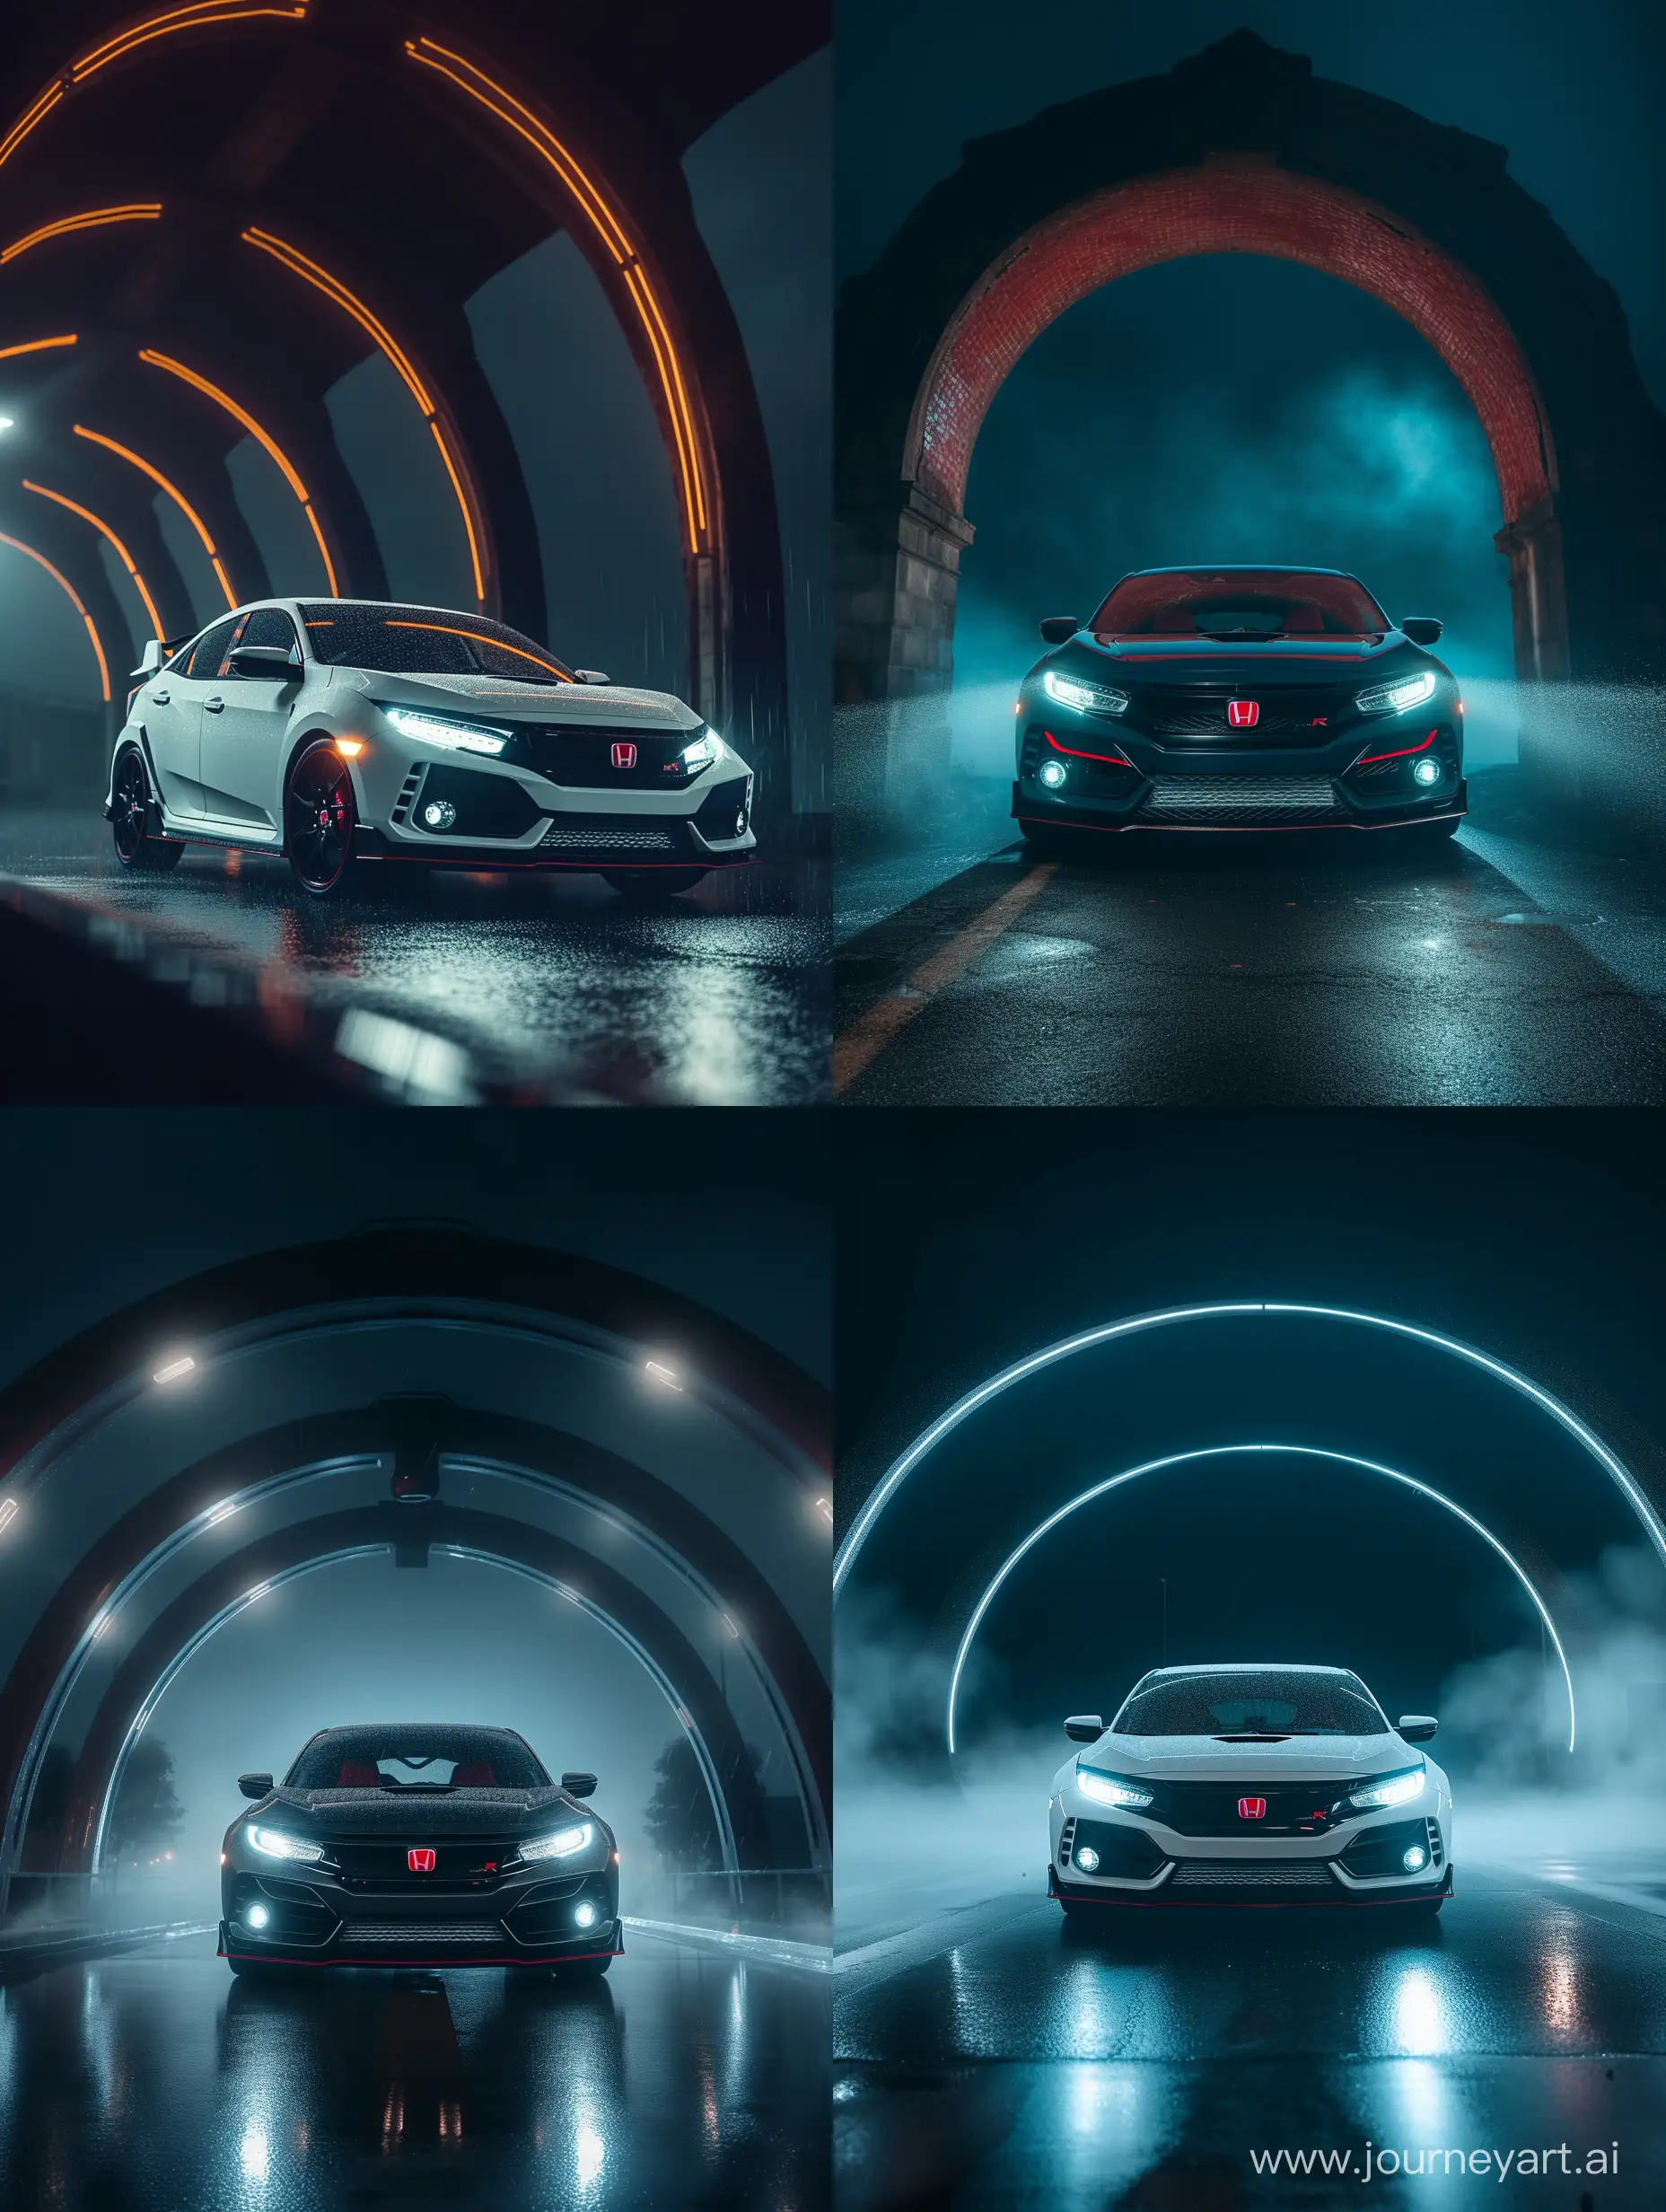 Sleek-Honda-Civic-Type-R-2019-Illuminated-in-Cinematic-Night-Scene